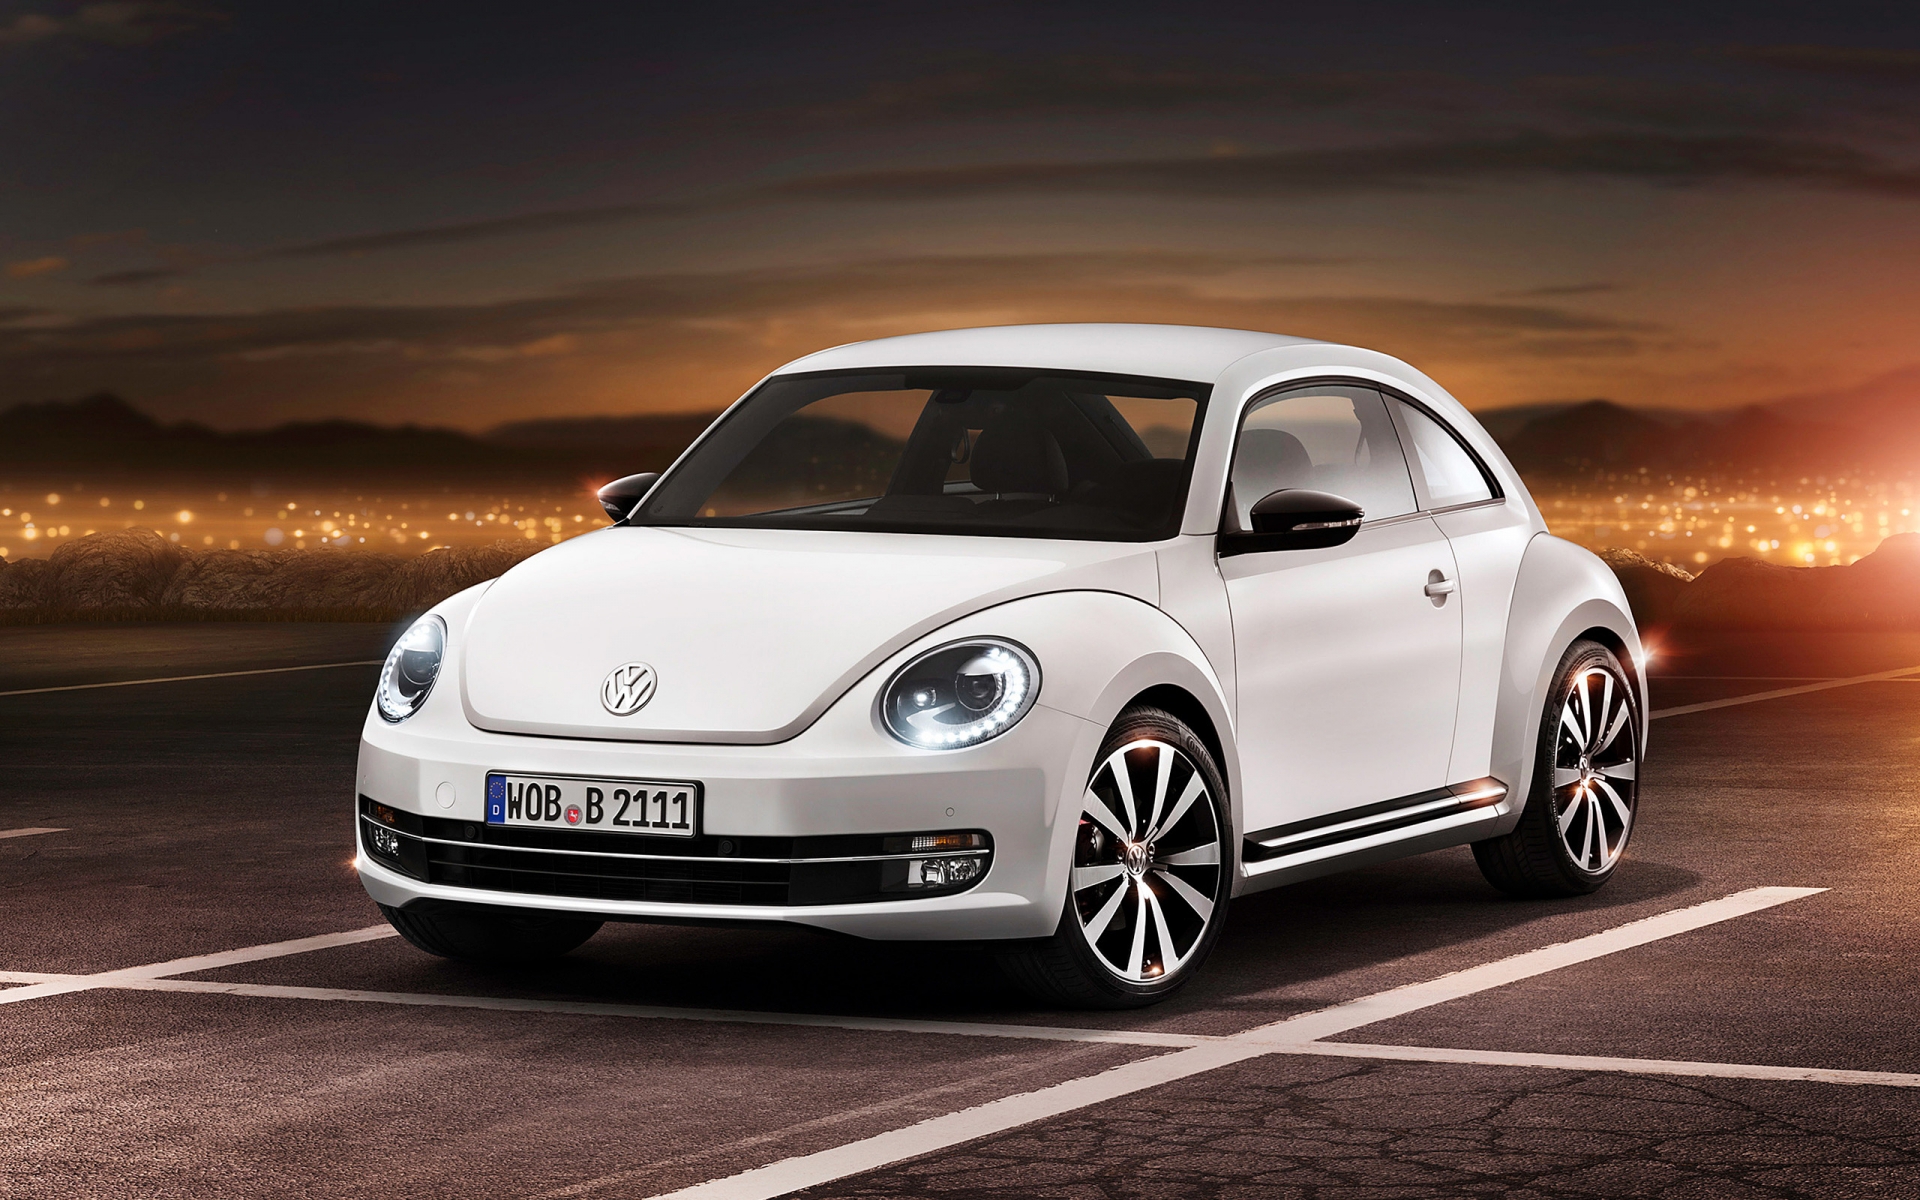 2012 Volkswagen Beetle for 1920 x 1200 widescreen resolution